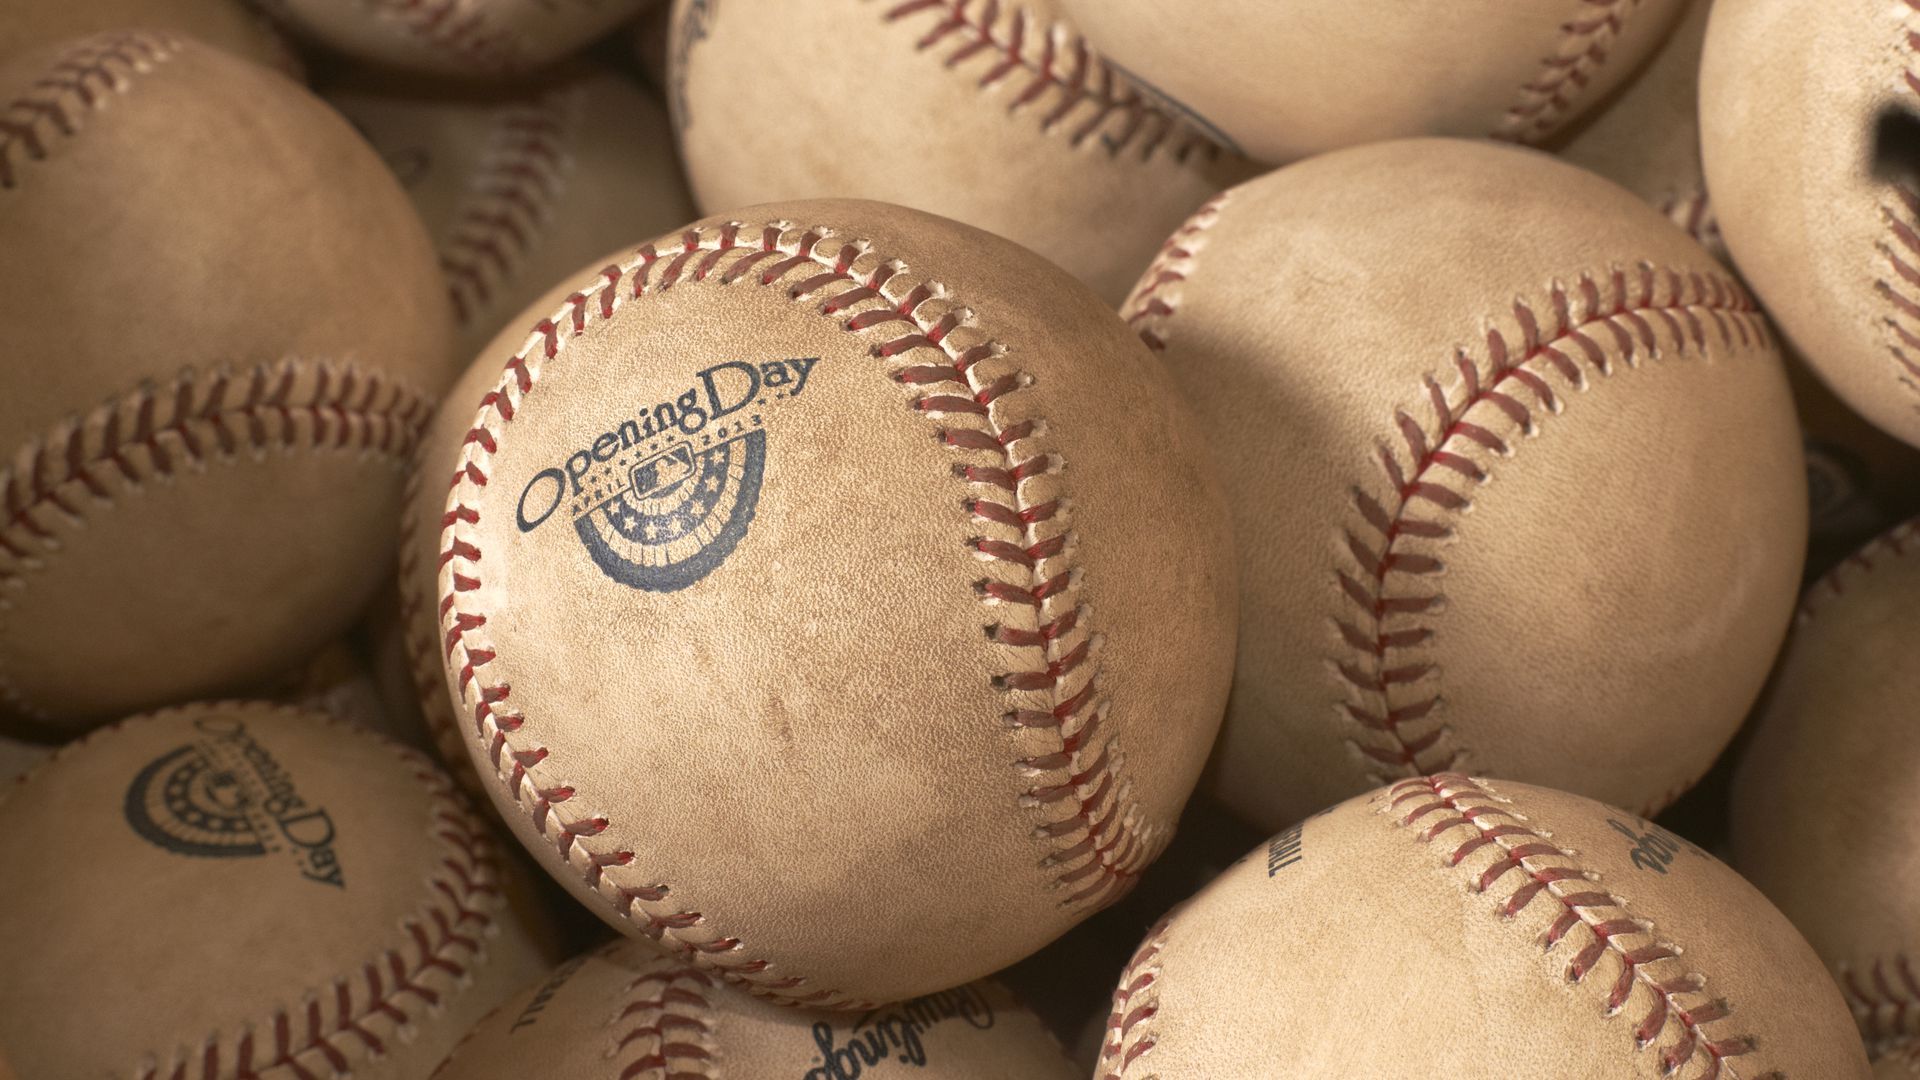 MLB Opening Day baseballs.